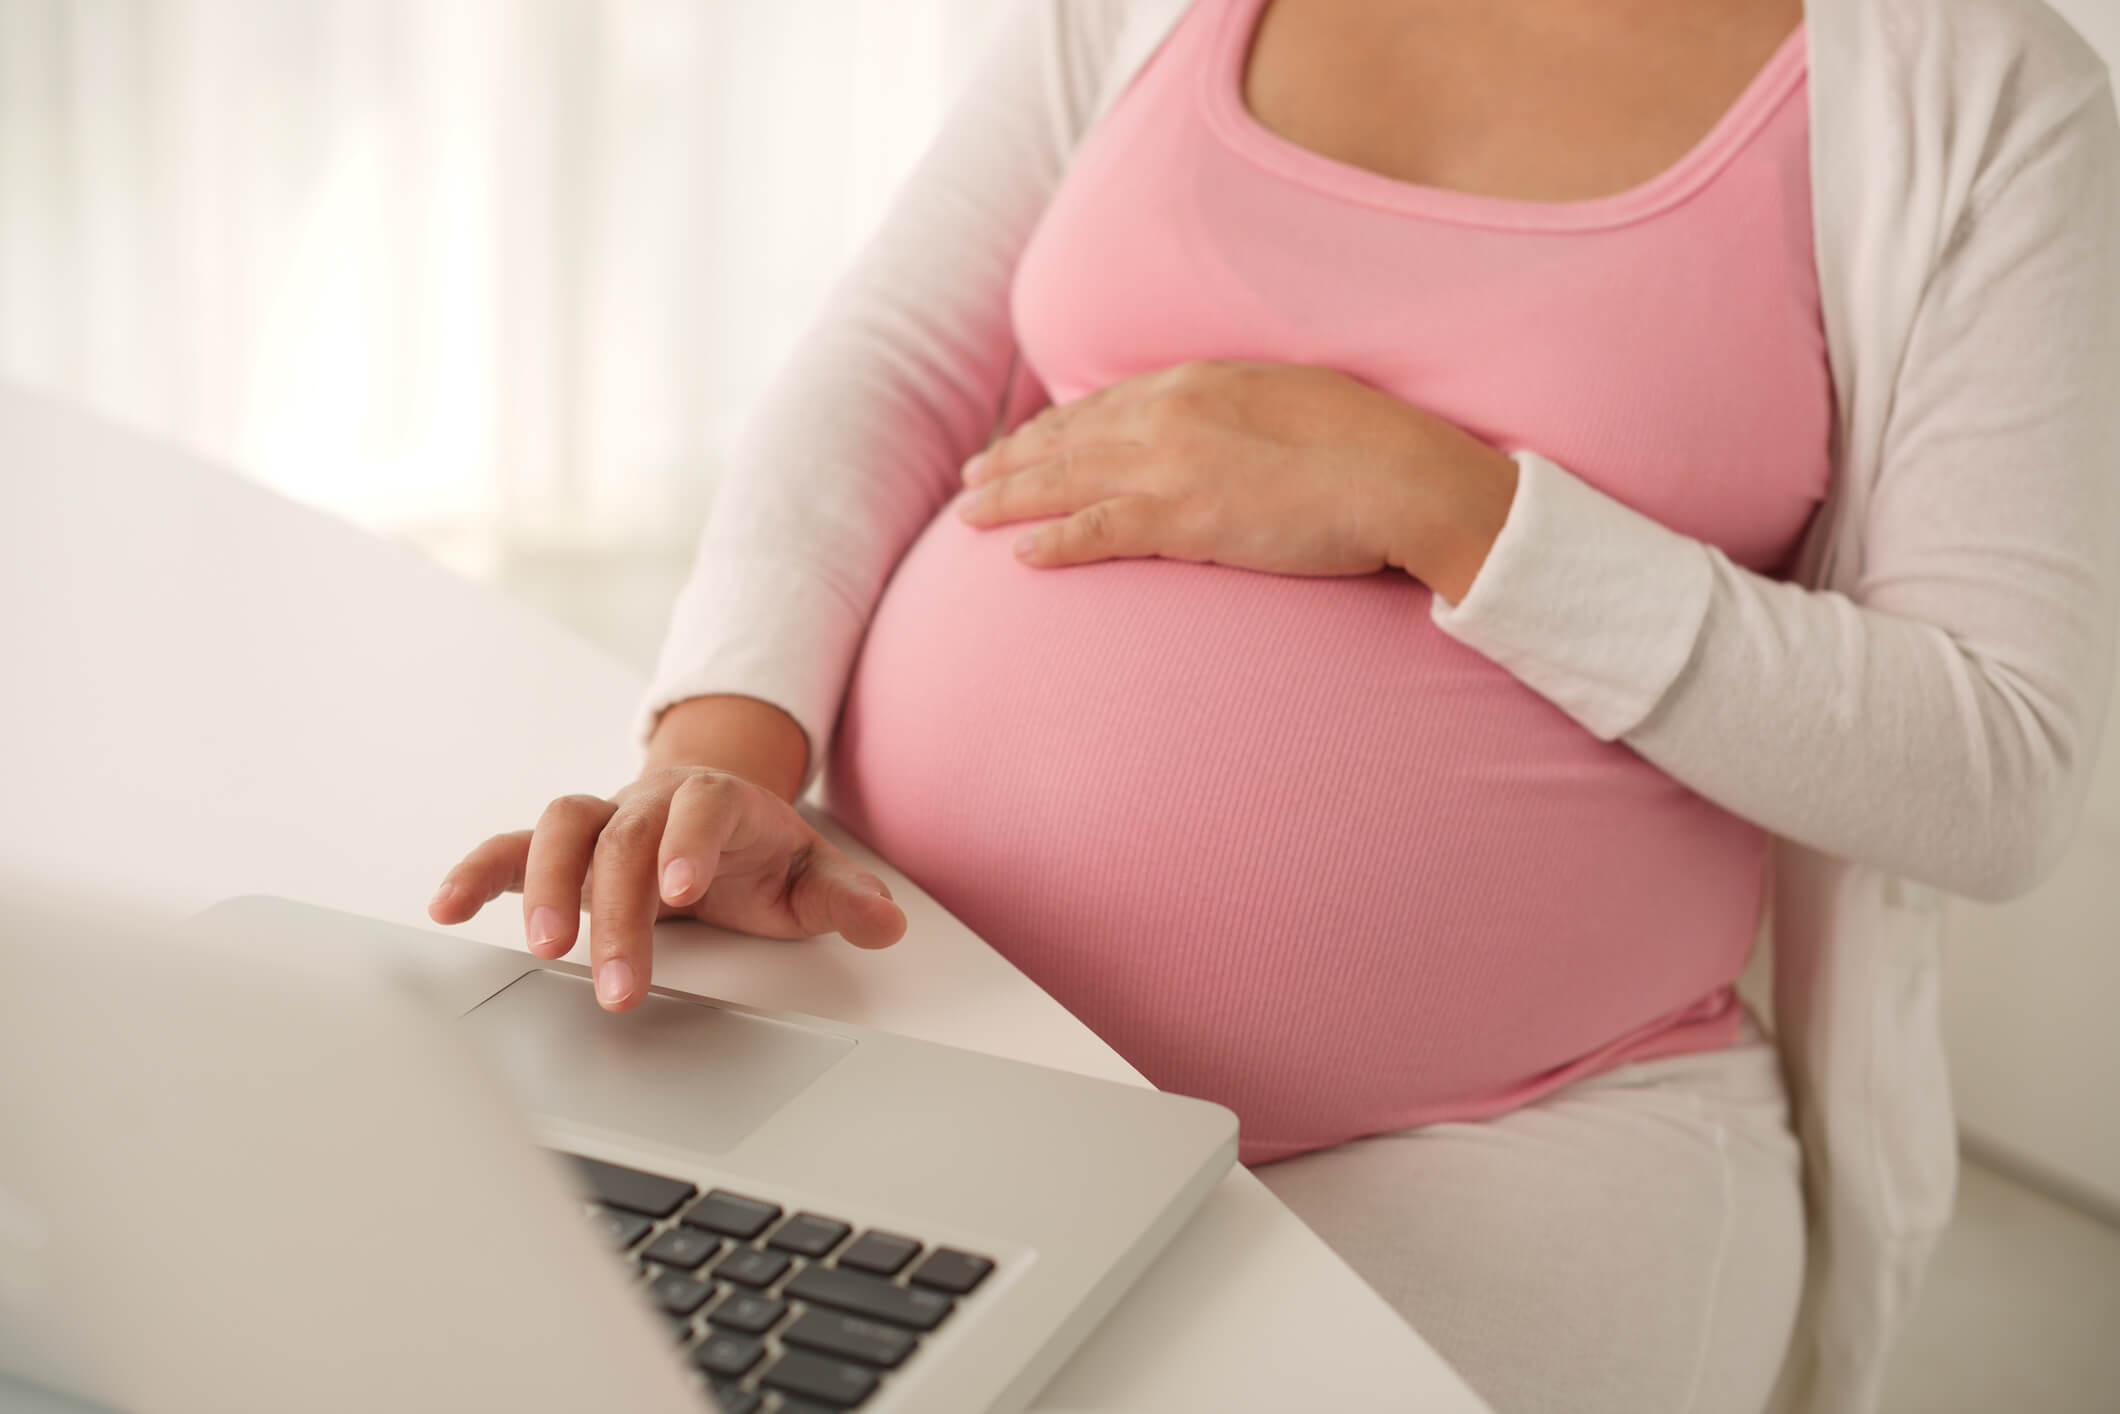 Joven en el tercer trimestre de embarazo se informa sobre los cambios en su cuerpo